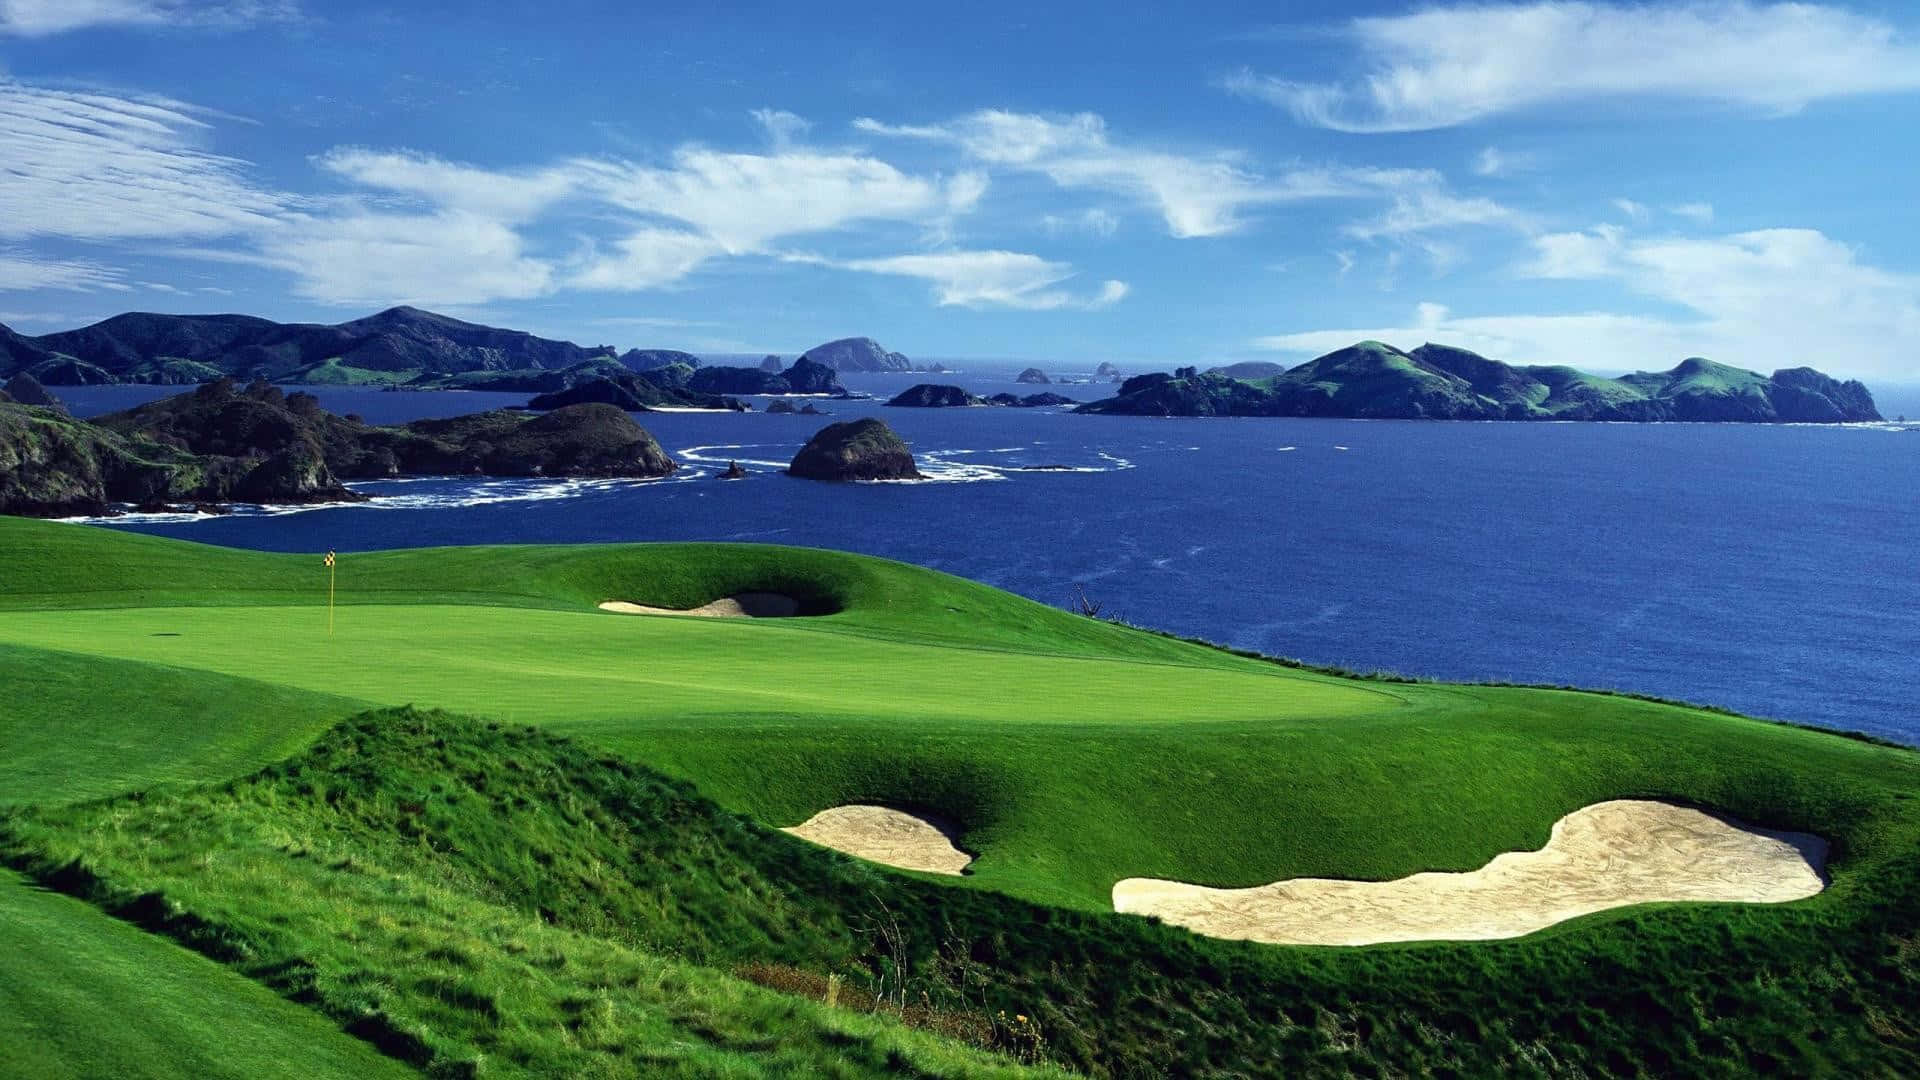 En golfbane med en grøn bunker og havet ude i horisonten.